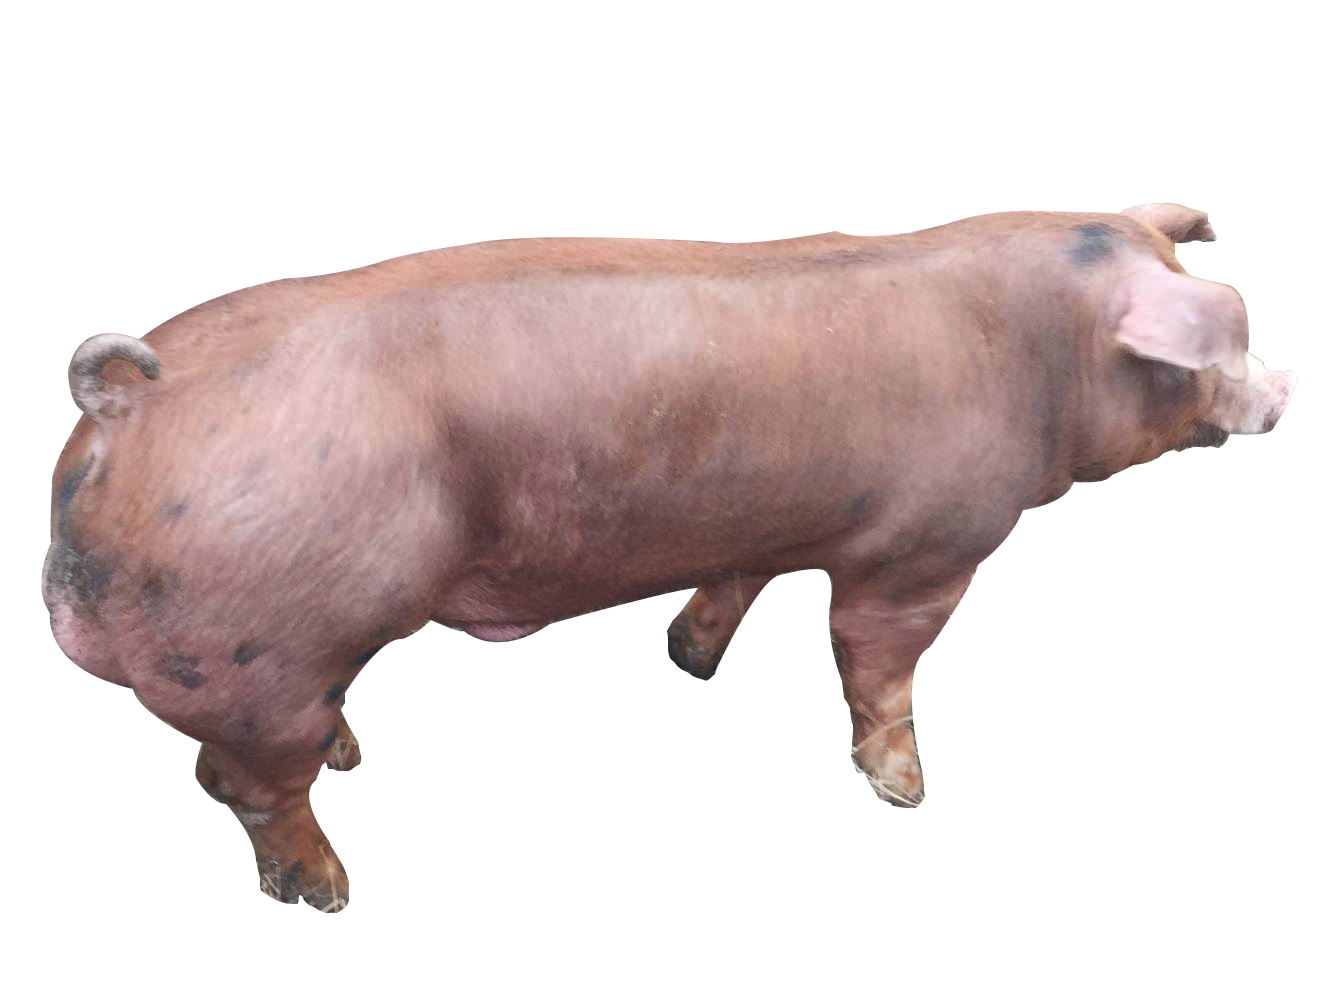 杜洛克种猪 加系种猪 四川天兆猪业股份有限公司